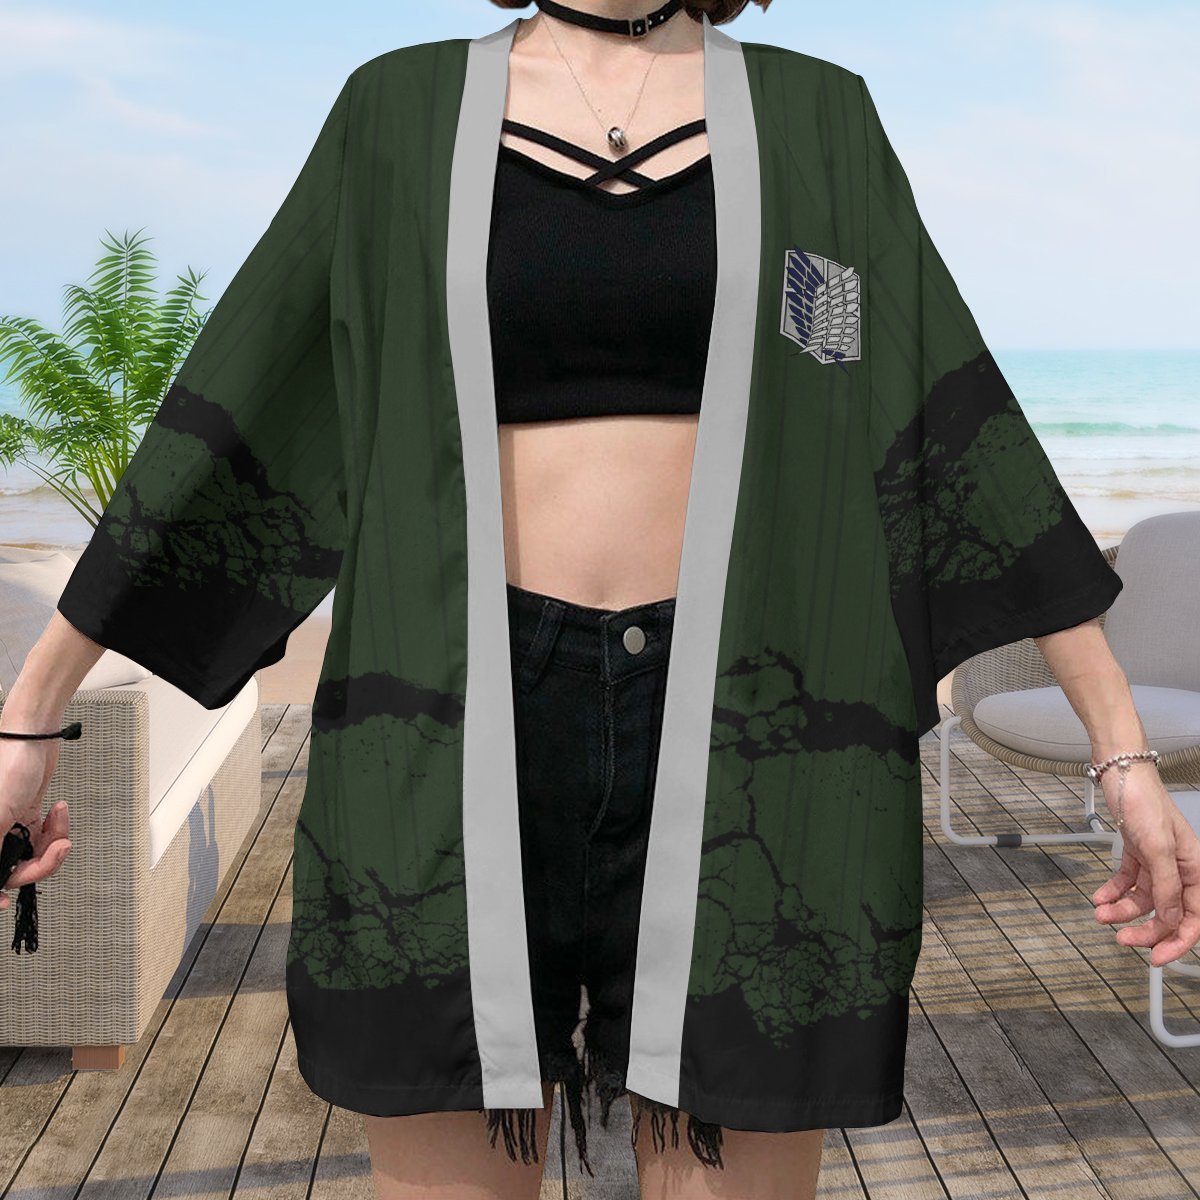 aot recon corps kimono 223597 - Attack On Titan Shop